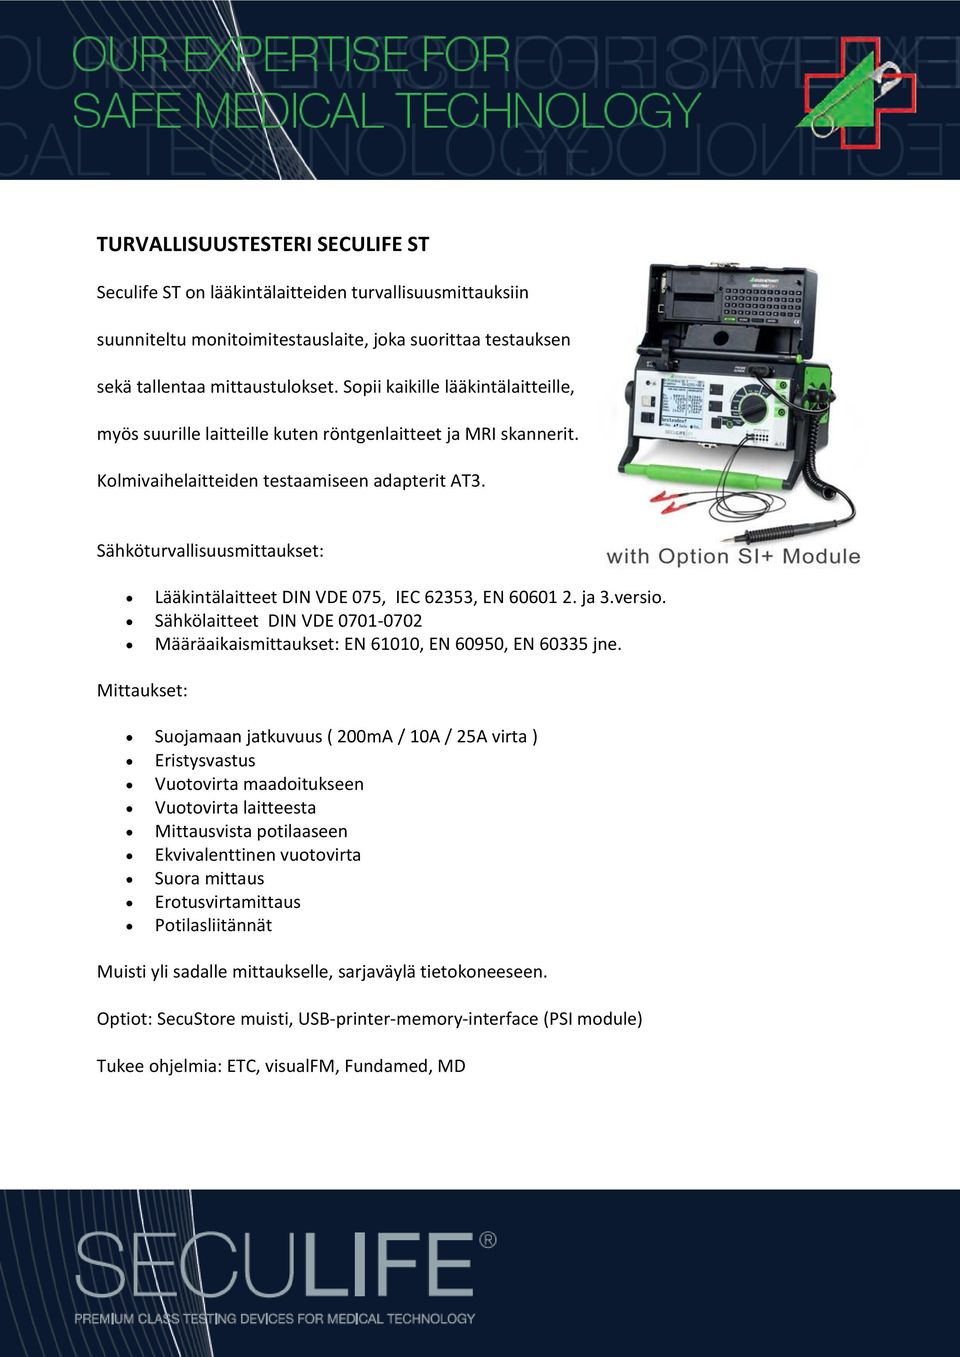 Sähköturvallisuusmittaukset: Lääkintälaitteet DIN VDE 075, IEC 62353, EN 60601 2. ja 3.versio. Sähkölaitteet DIN VDE 0701-0702 Määräaikaismittaukset: EN 61010, EN 60950, EN 60335 jne.